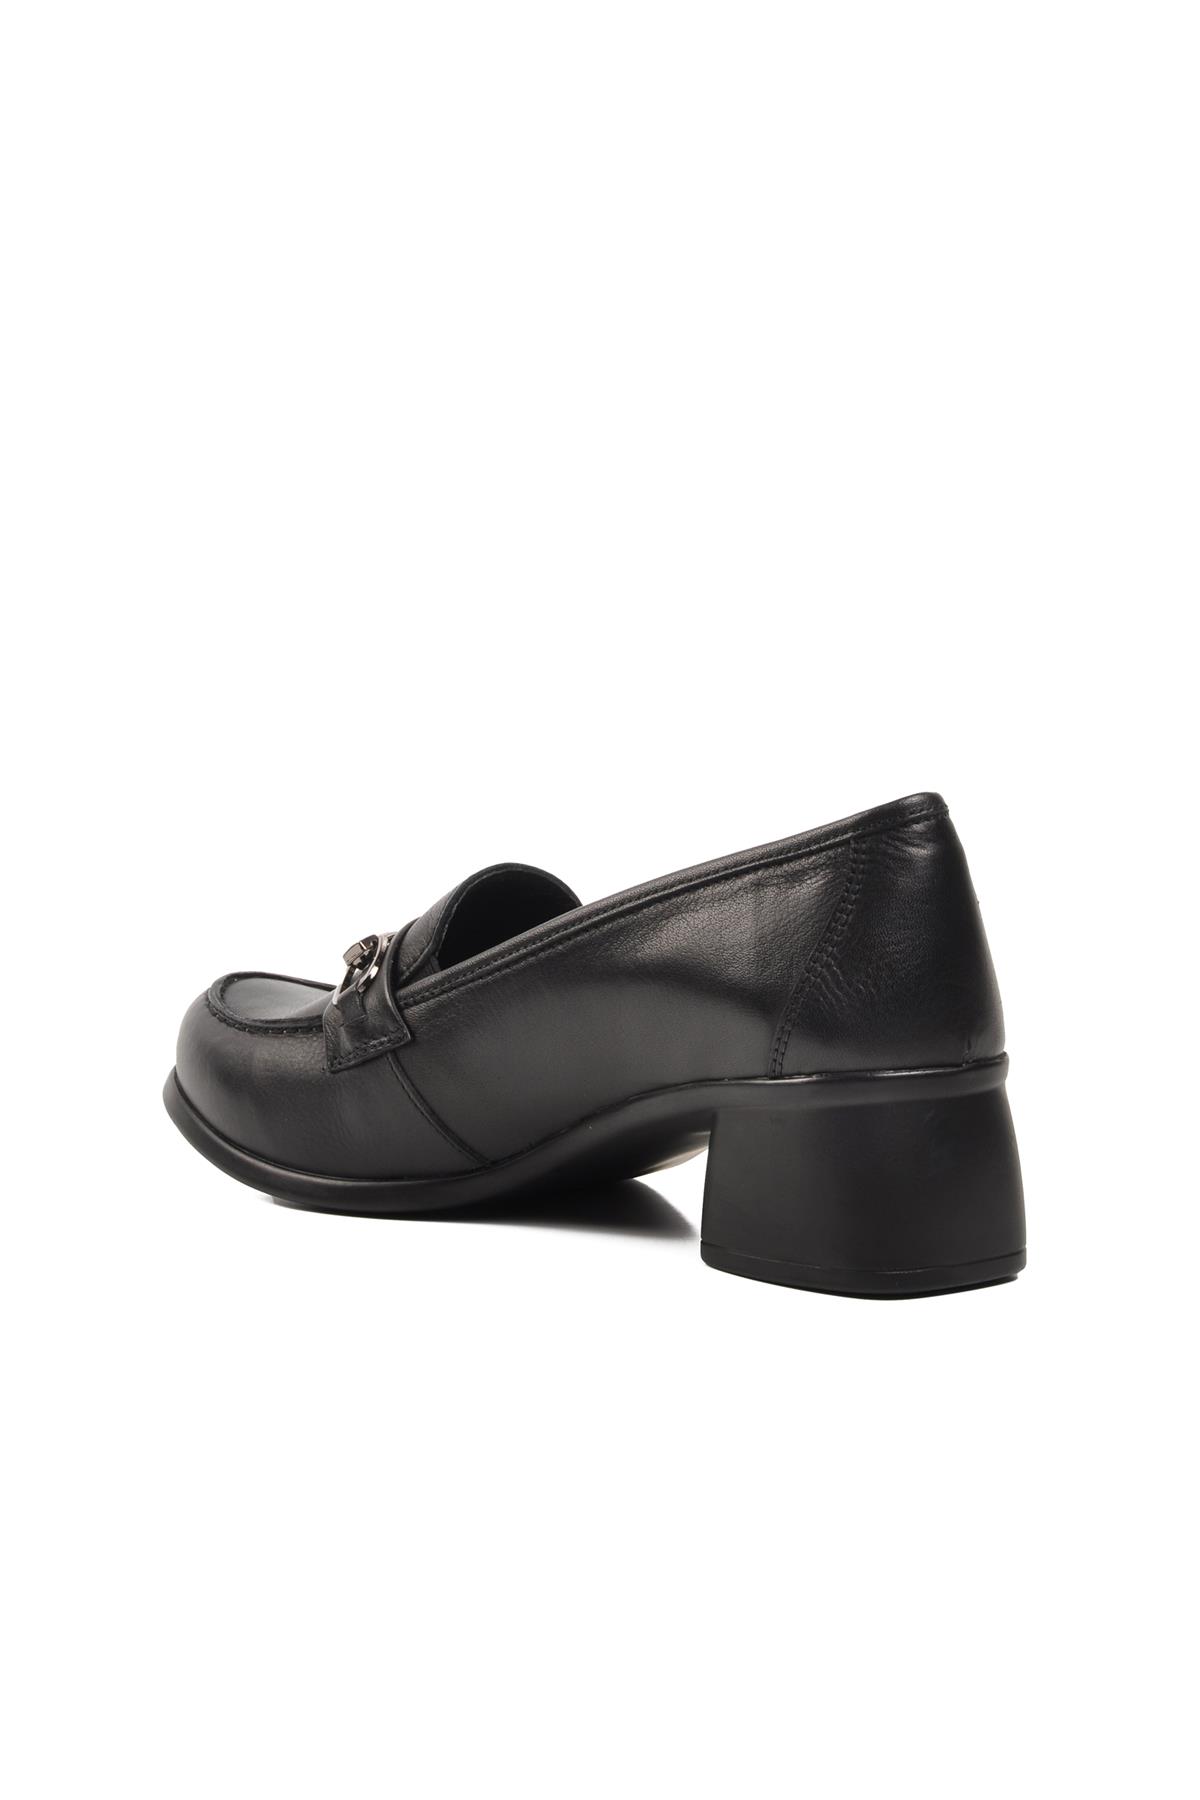 Ayakmod 44259 Siyah Hakiki Deri Kadın Günlük Ayakkabı Ayakmod Kadın Günlük Ayakkabı